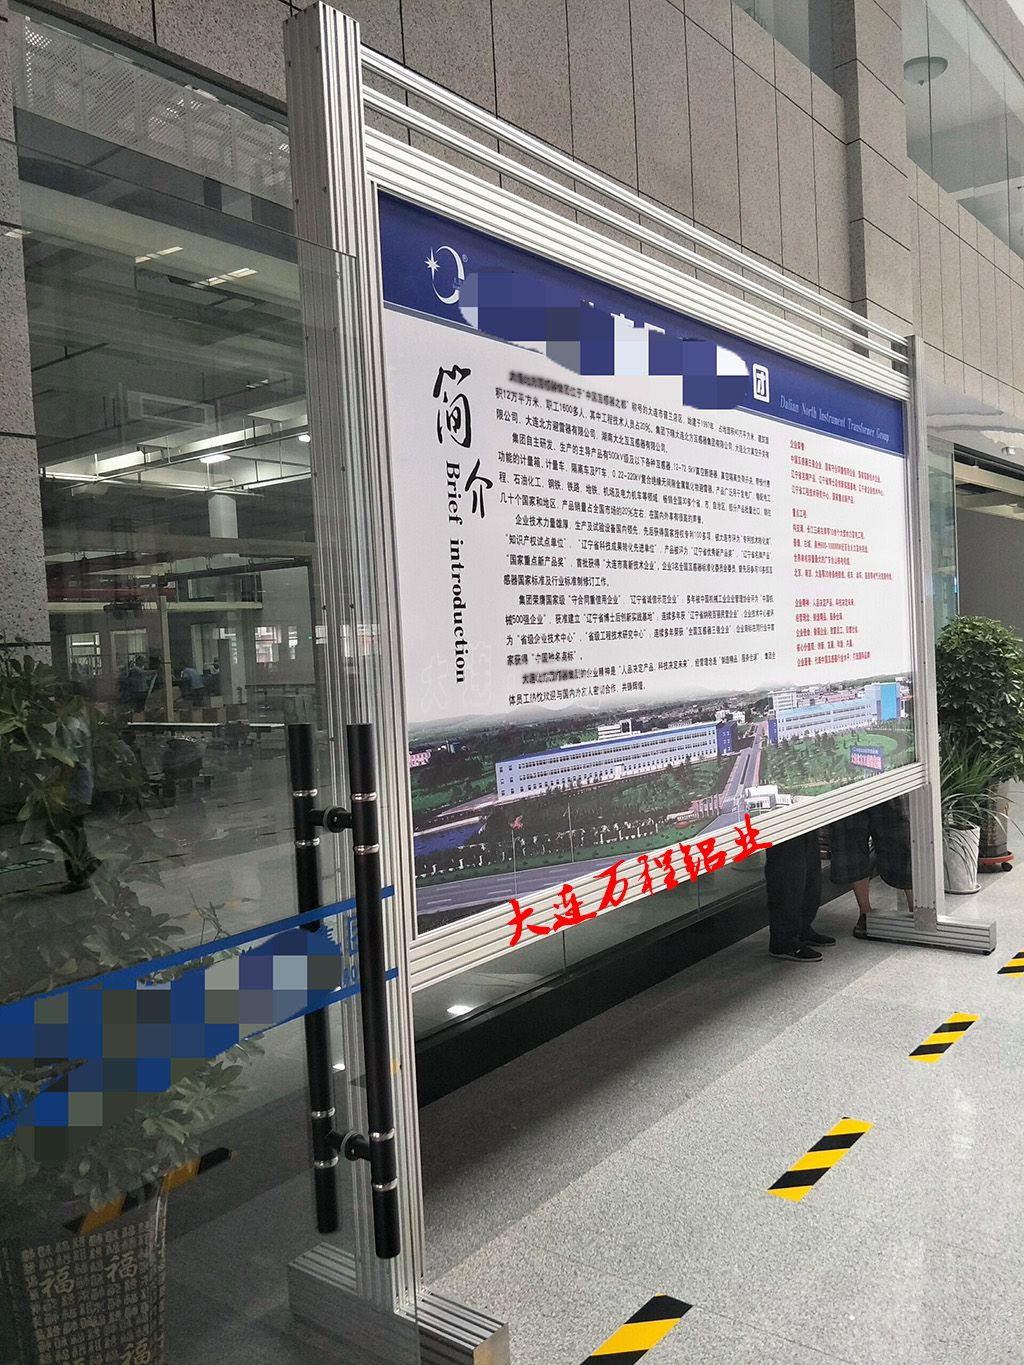 门前沙巴竞技体育丨中国有限公司官网展示架